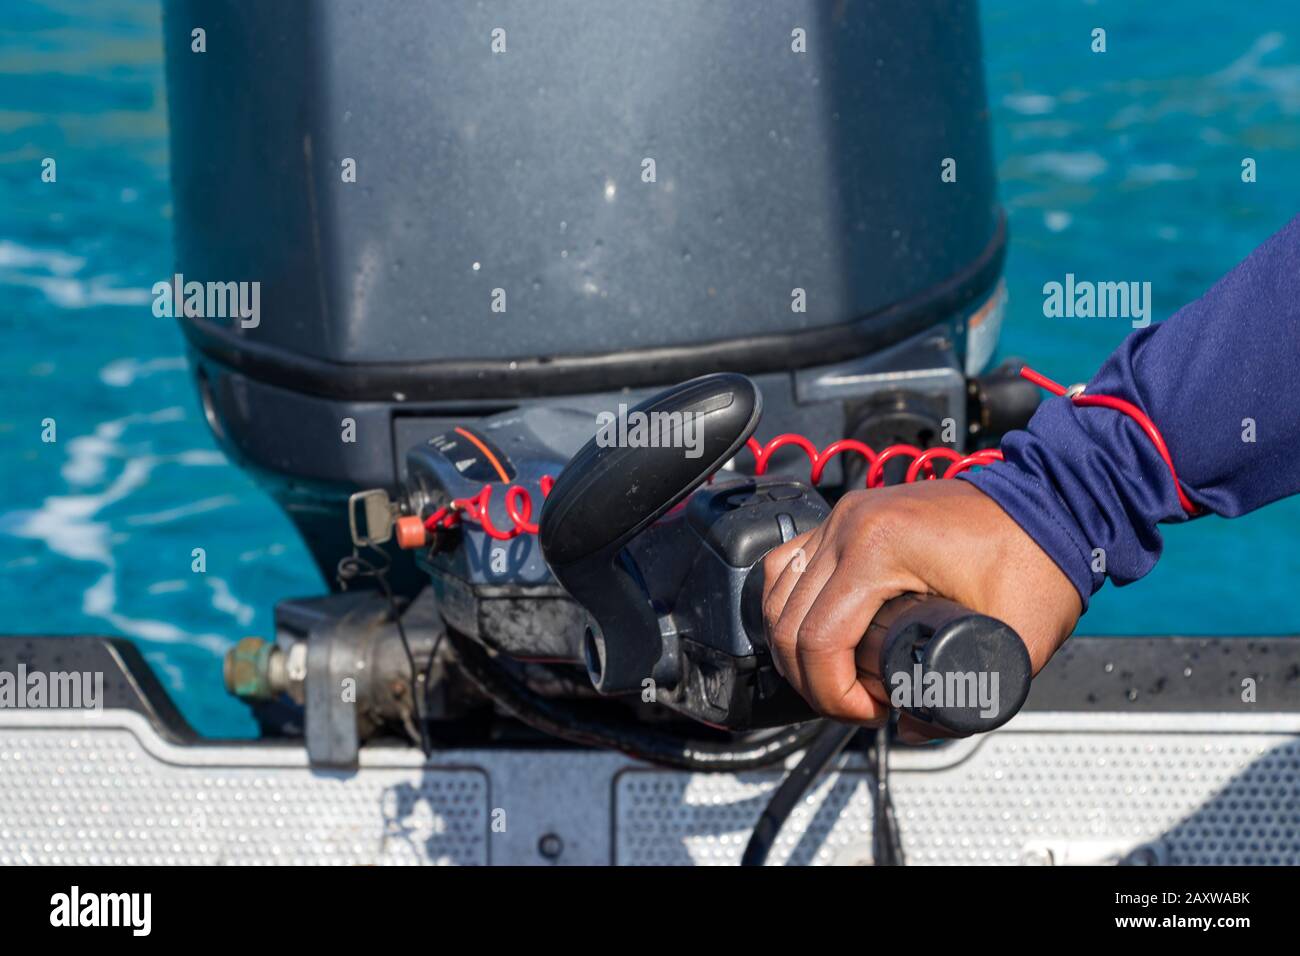 Männliche Hand, die ein aufblasbares Boot mit der Deichsel eines Außenbordmotorboots fährt. Stockfoto